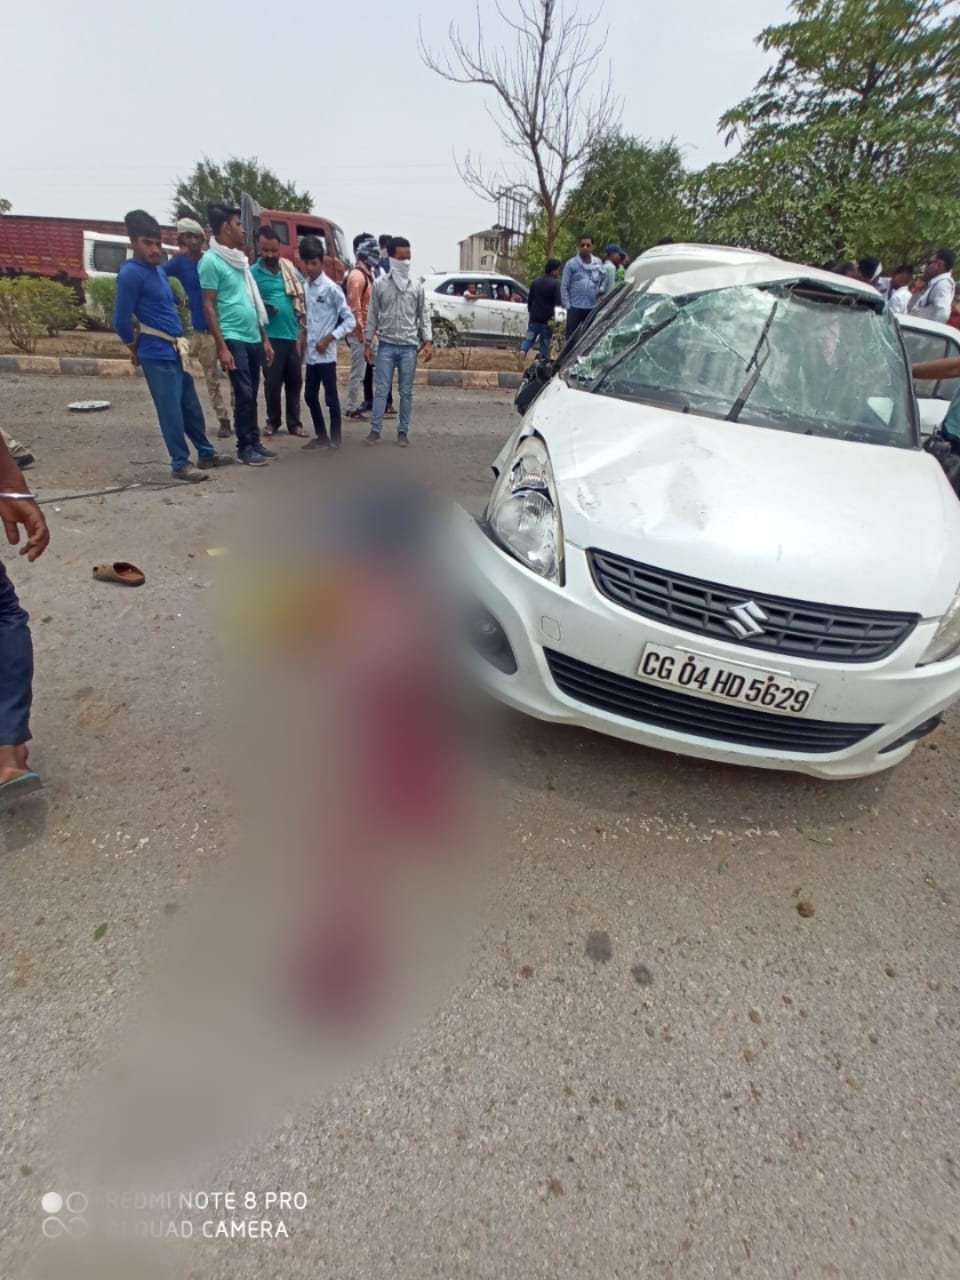 RAIPUR ACCIDENT NEWS : तेज रफ्तार कार अनियंत्रित होकर पलटी, पति की मौके पर मौत, बच्चे और पत्नी घायल